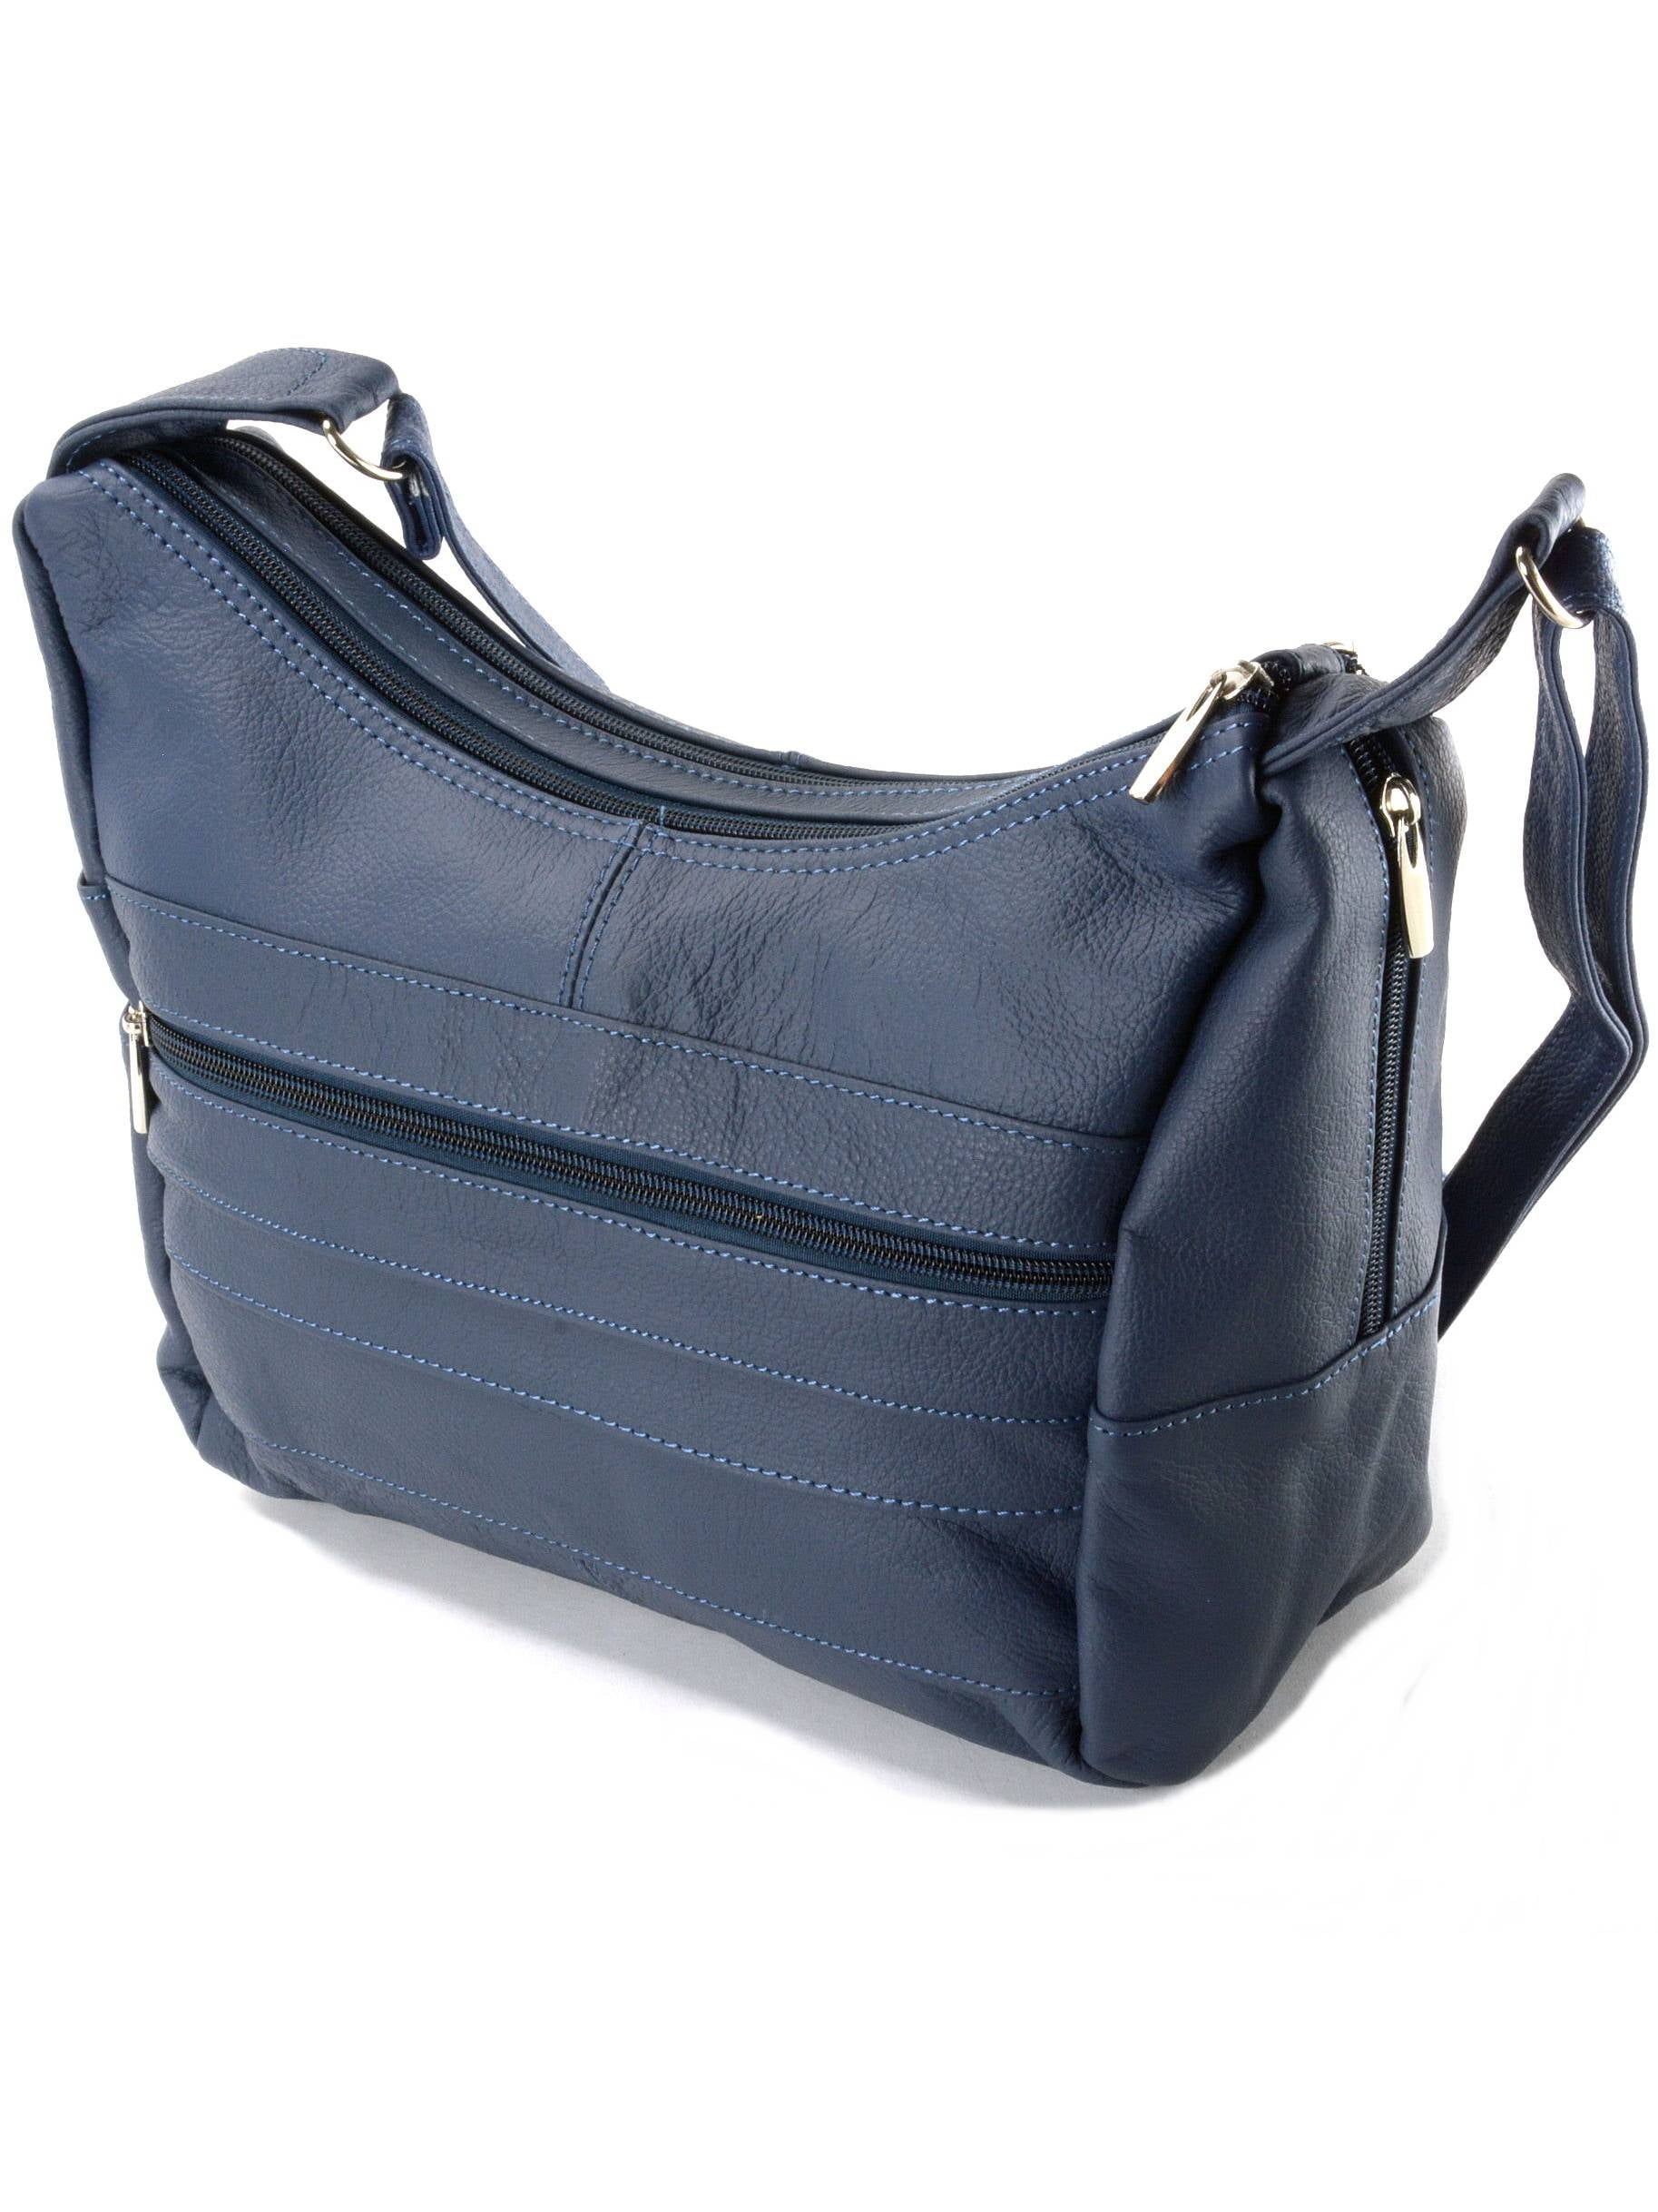 Luxury Valt Navy Blue Ladies Leather Hand Bag